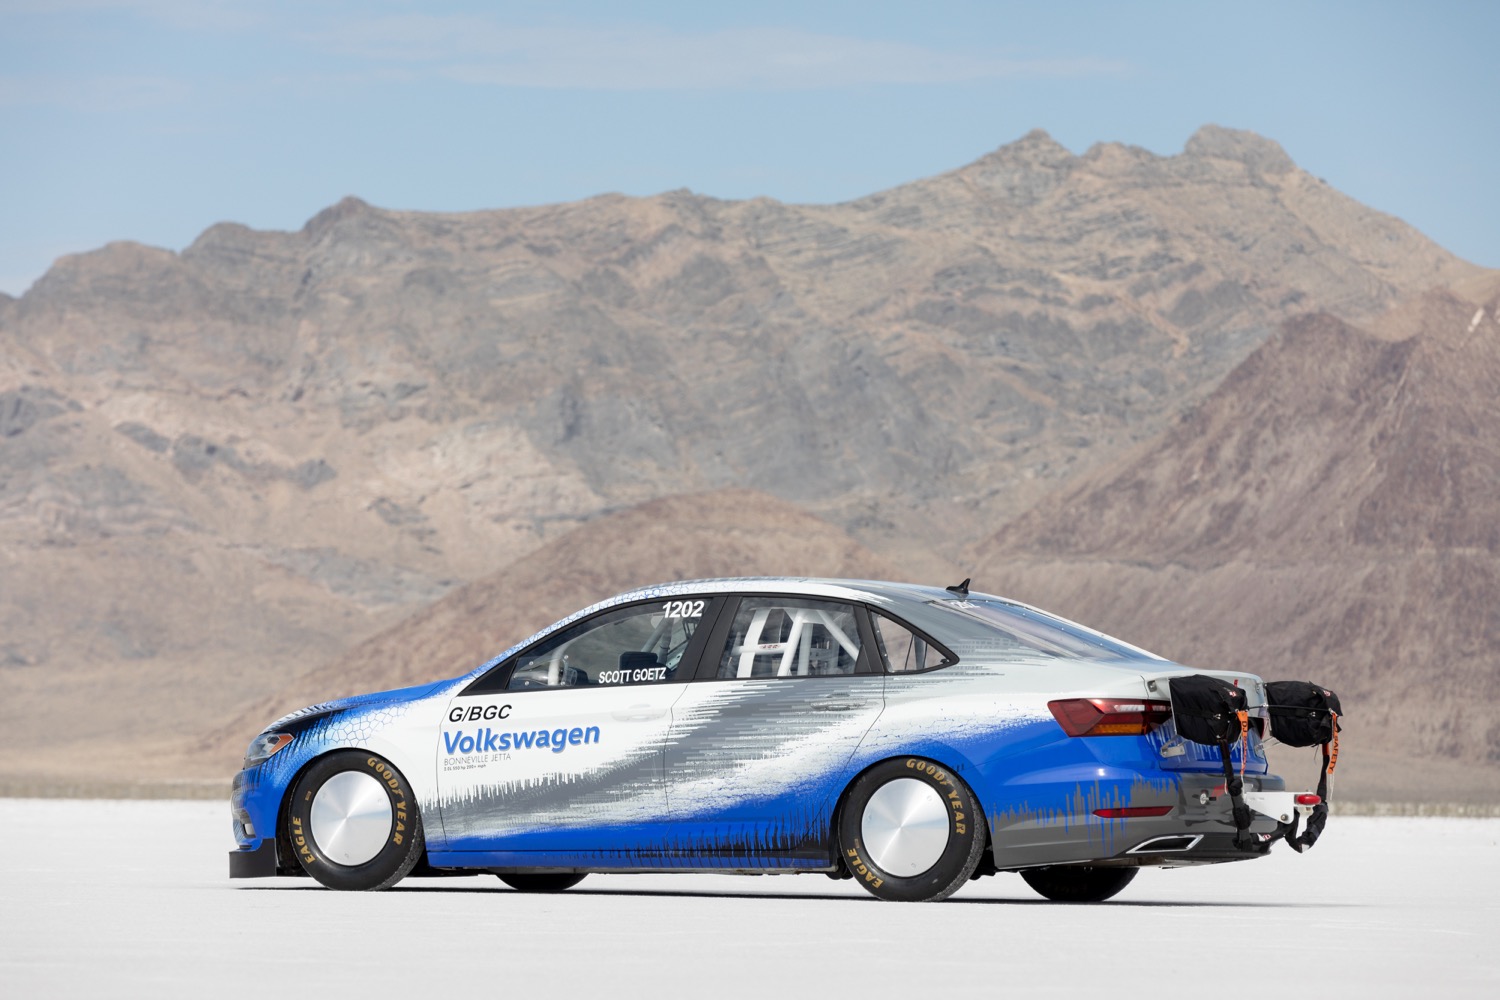 2019 Volkswagen Jetta land-speed record car